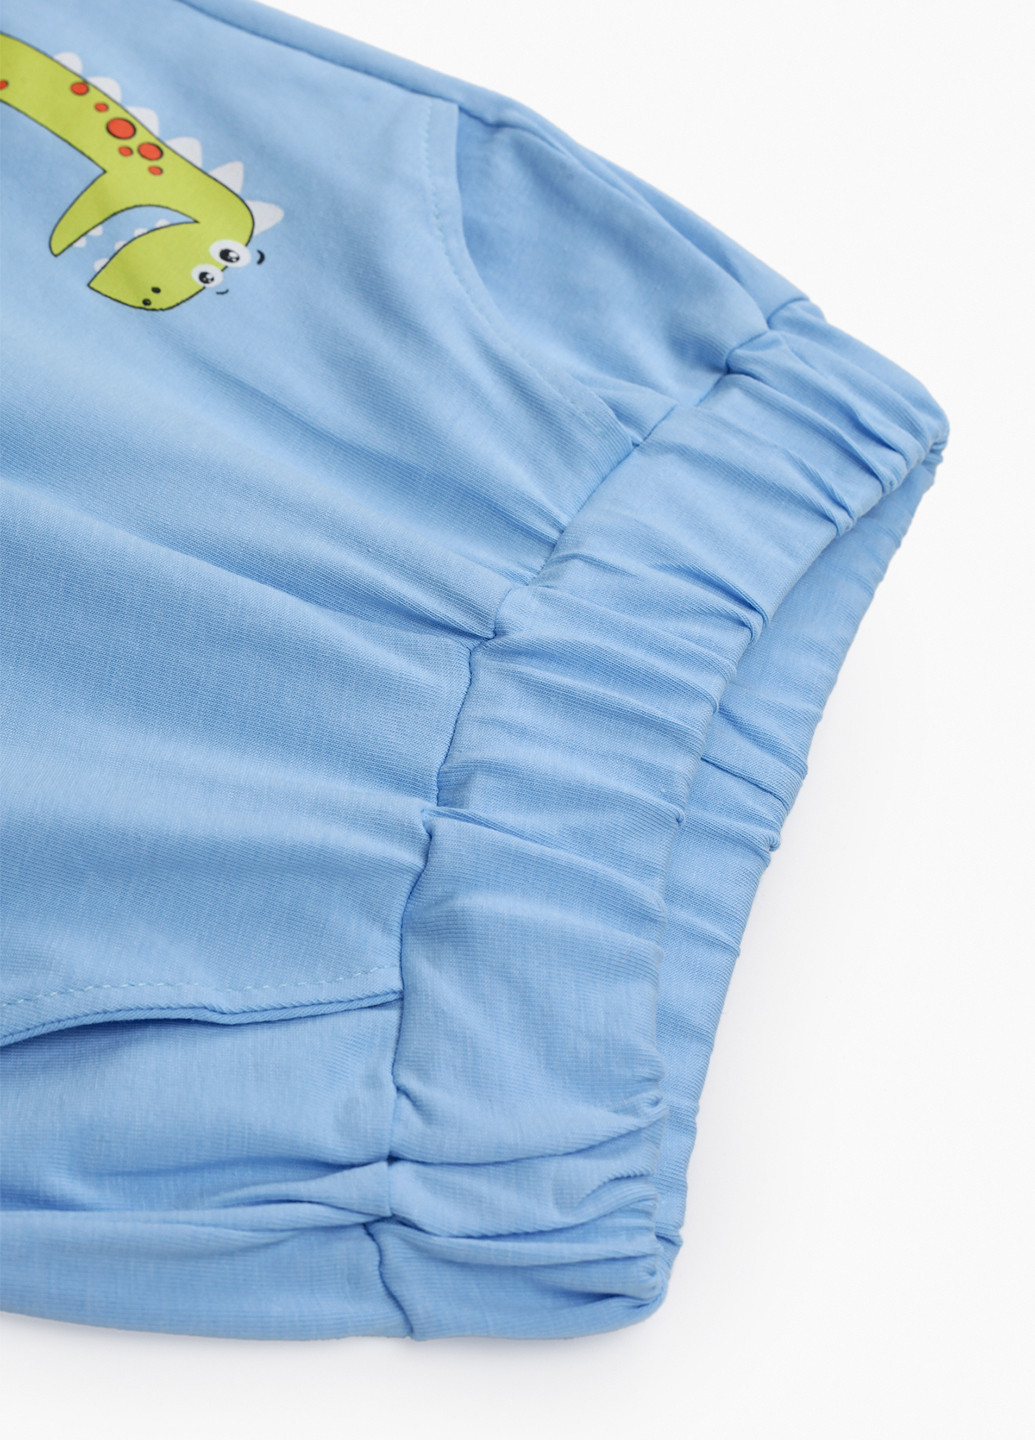 Голубой летний костюм (футболка, шорты) юбочный Bay Gree